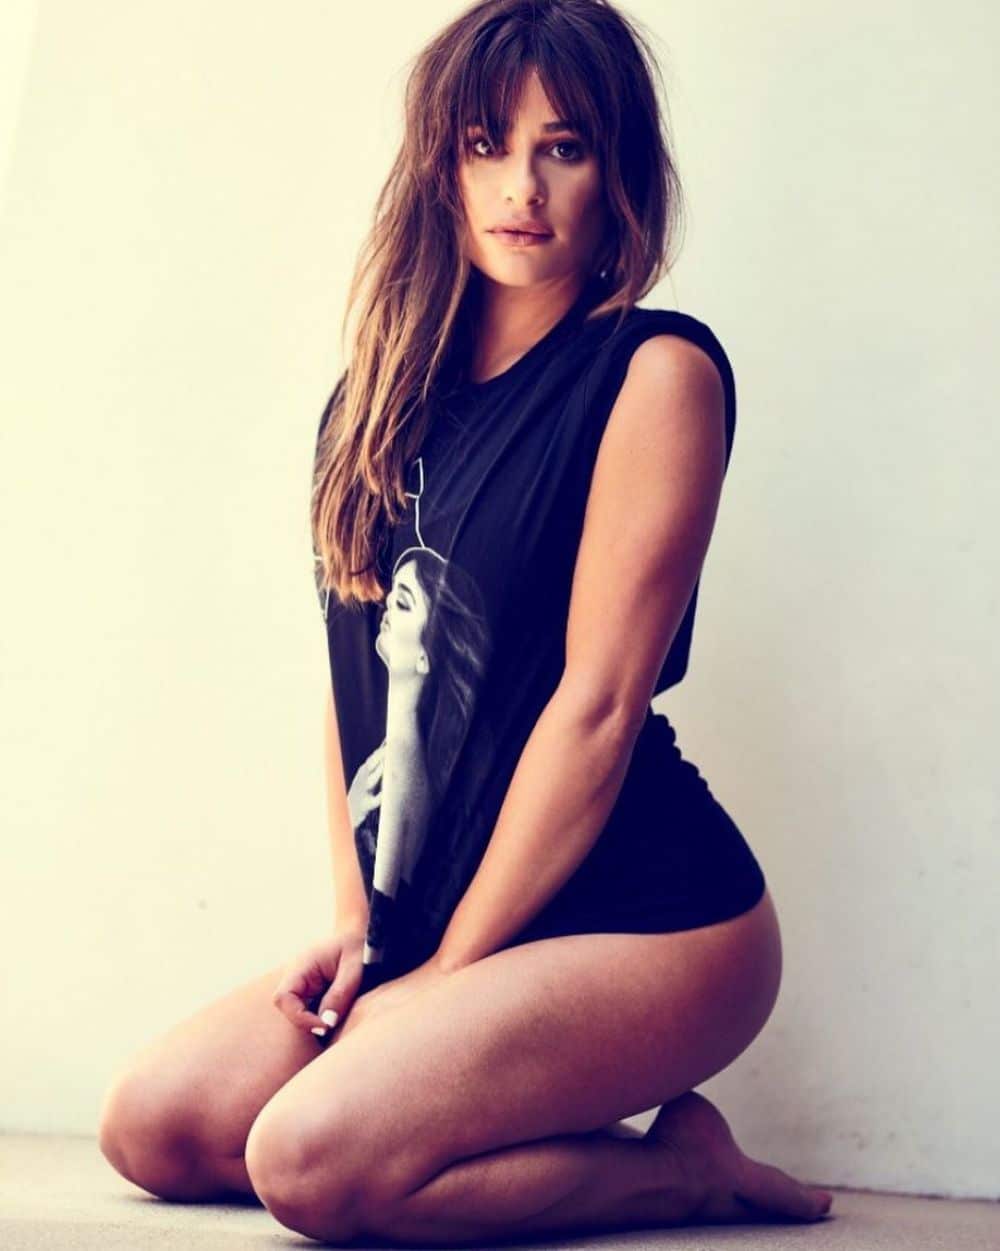 Lea Michele no pants (1)